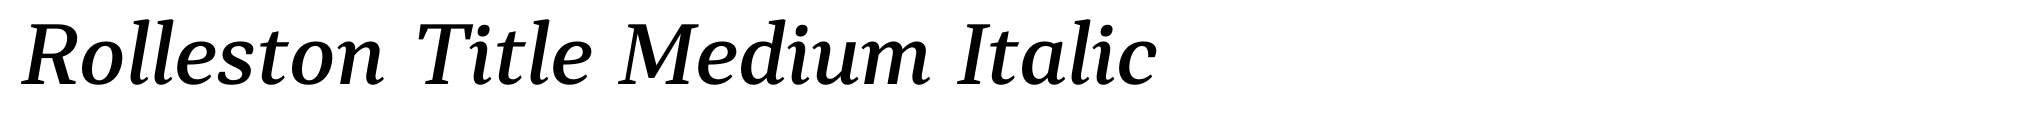 Rolleston Title Medium Italic image